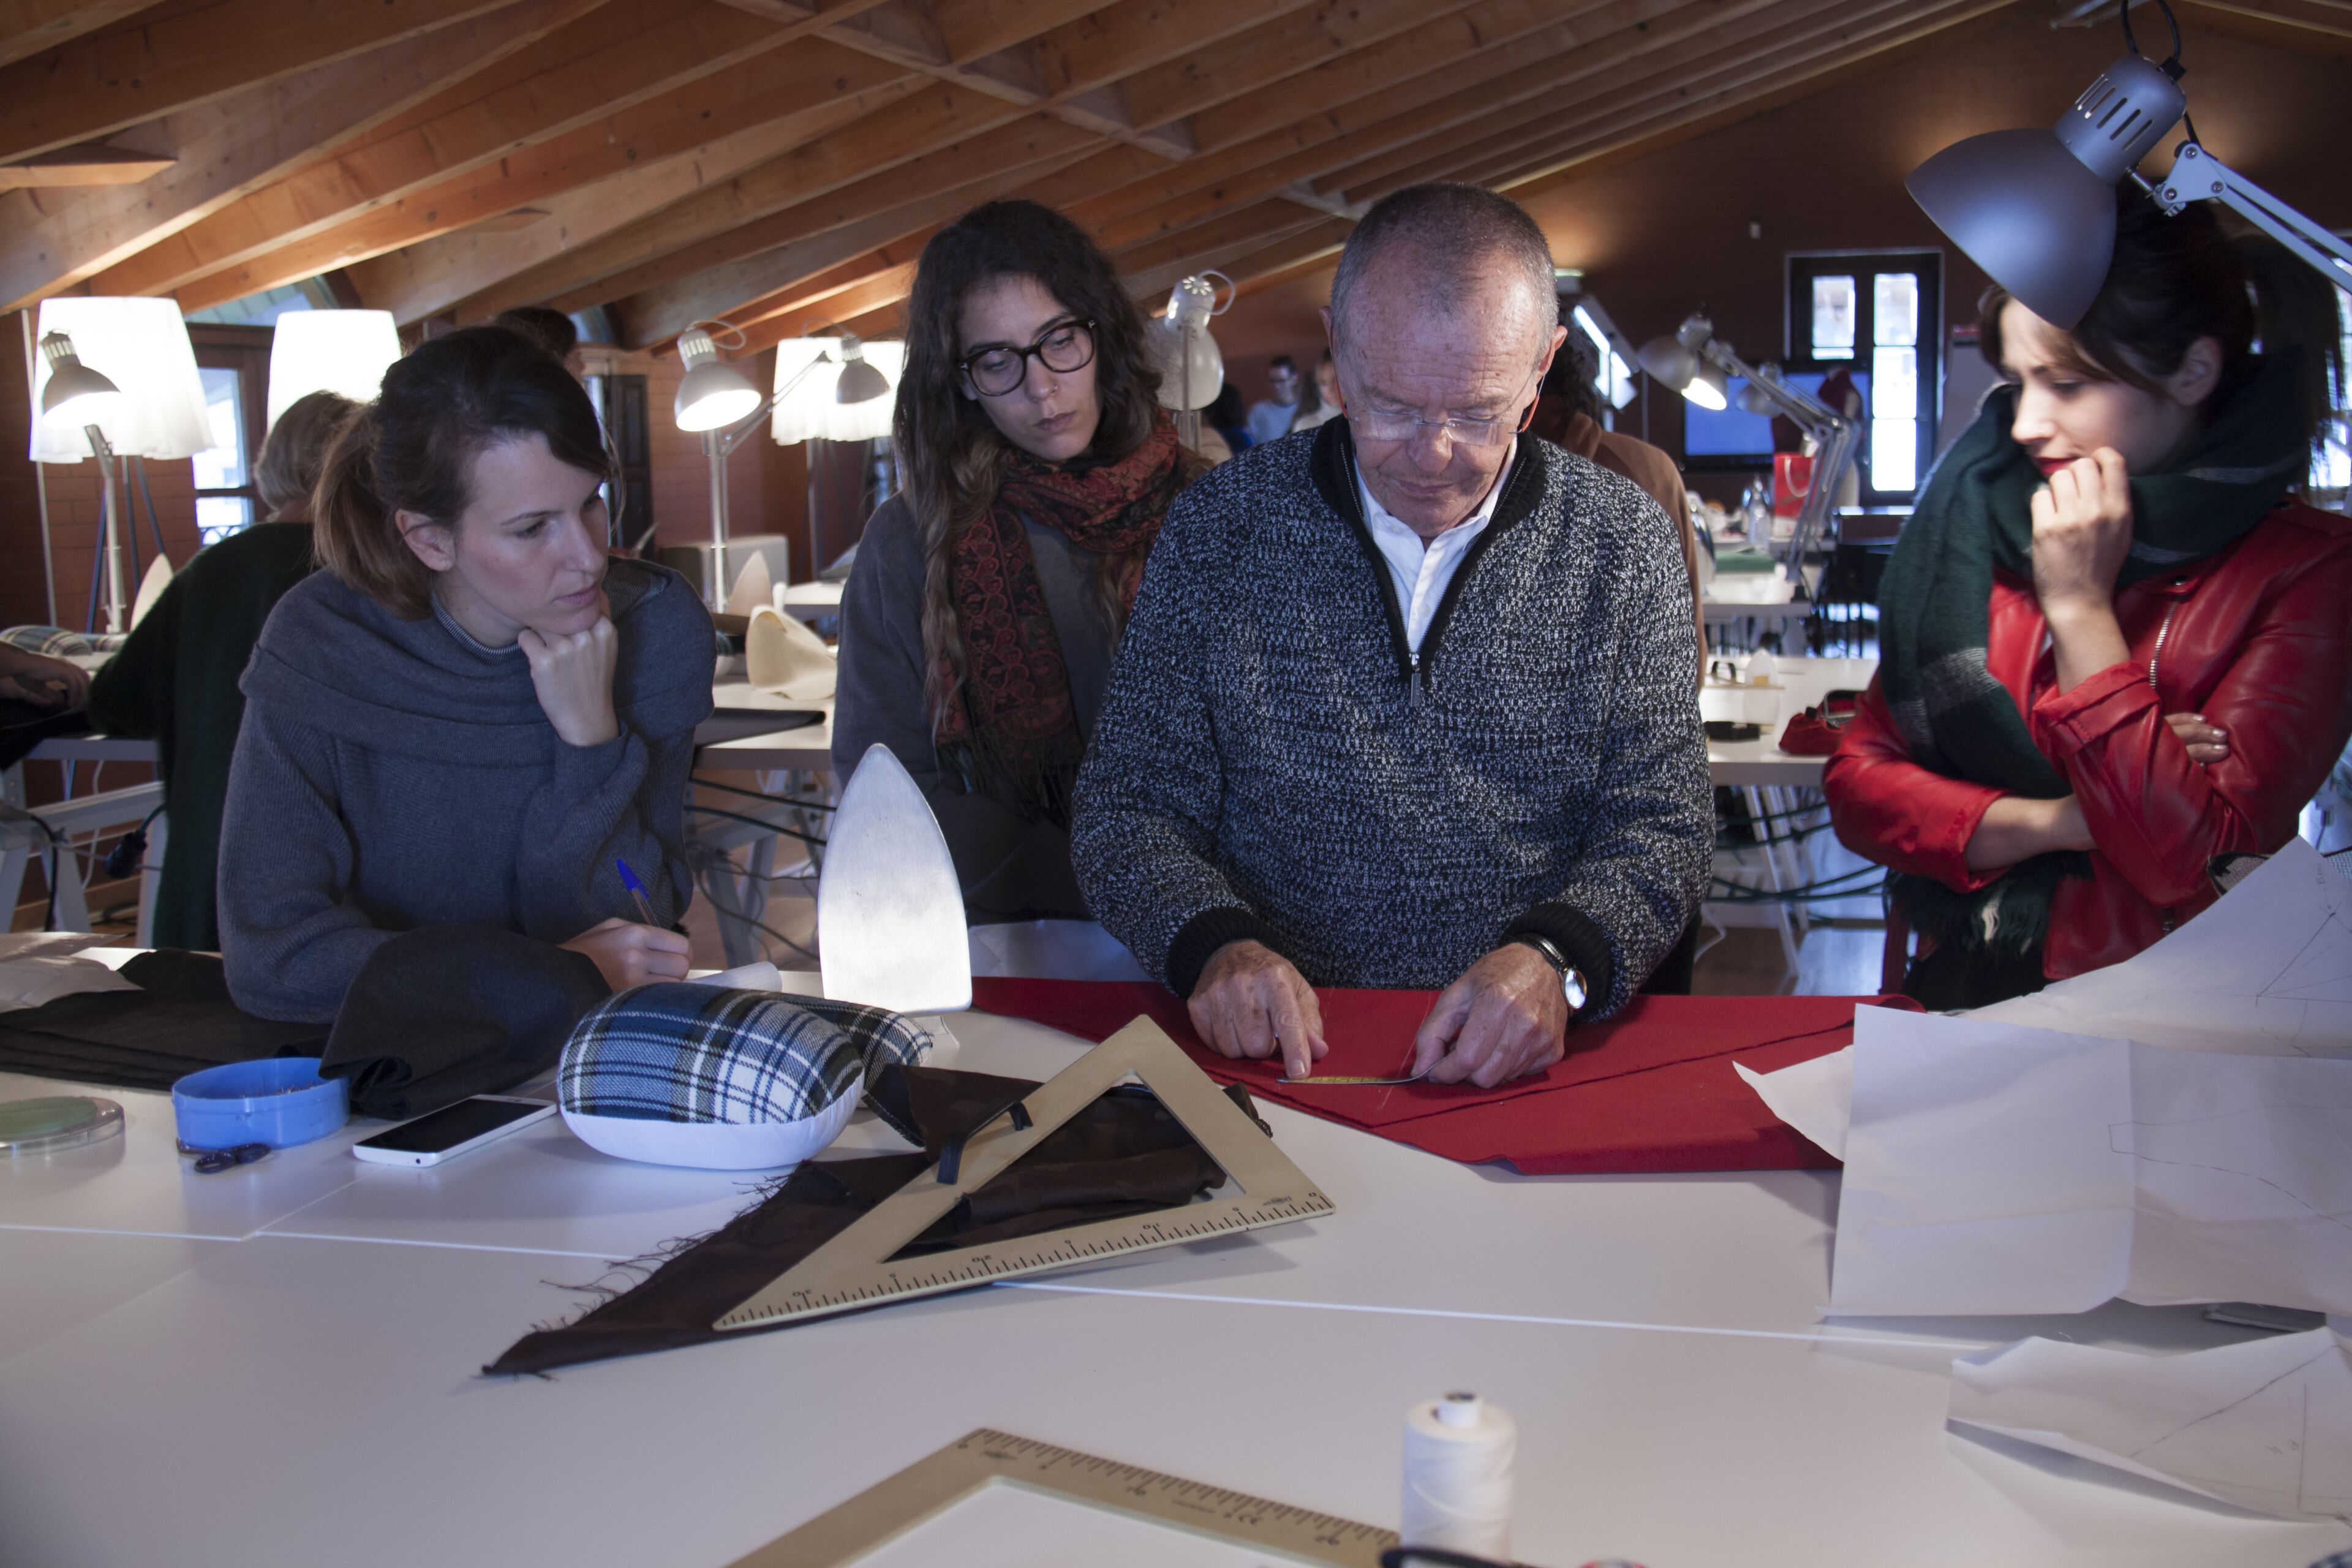 Un grupo de profesionales de la moda discuten atentamente y trabajan en la disposición de patrones sobre una gran mesa, en medio de un entorno de taller creativo.